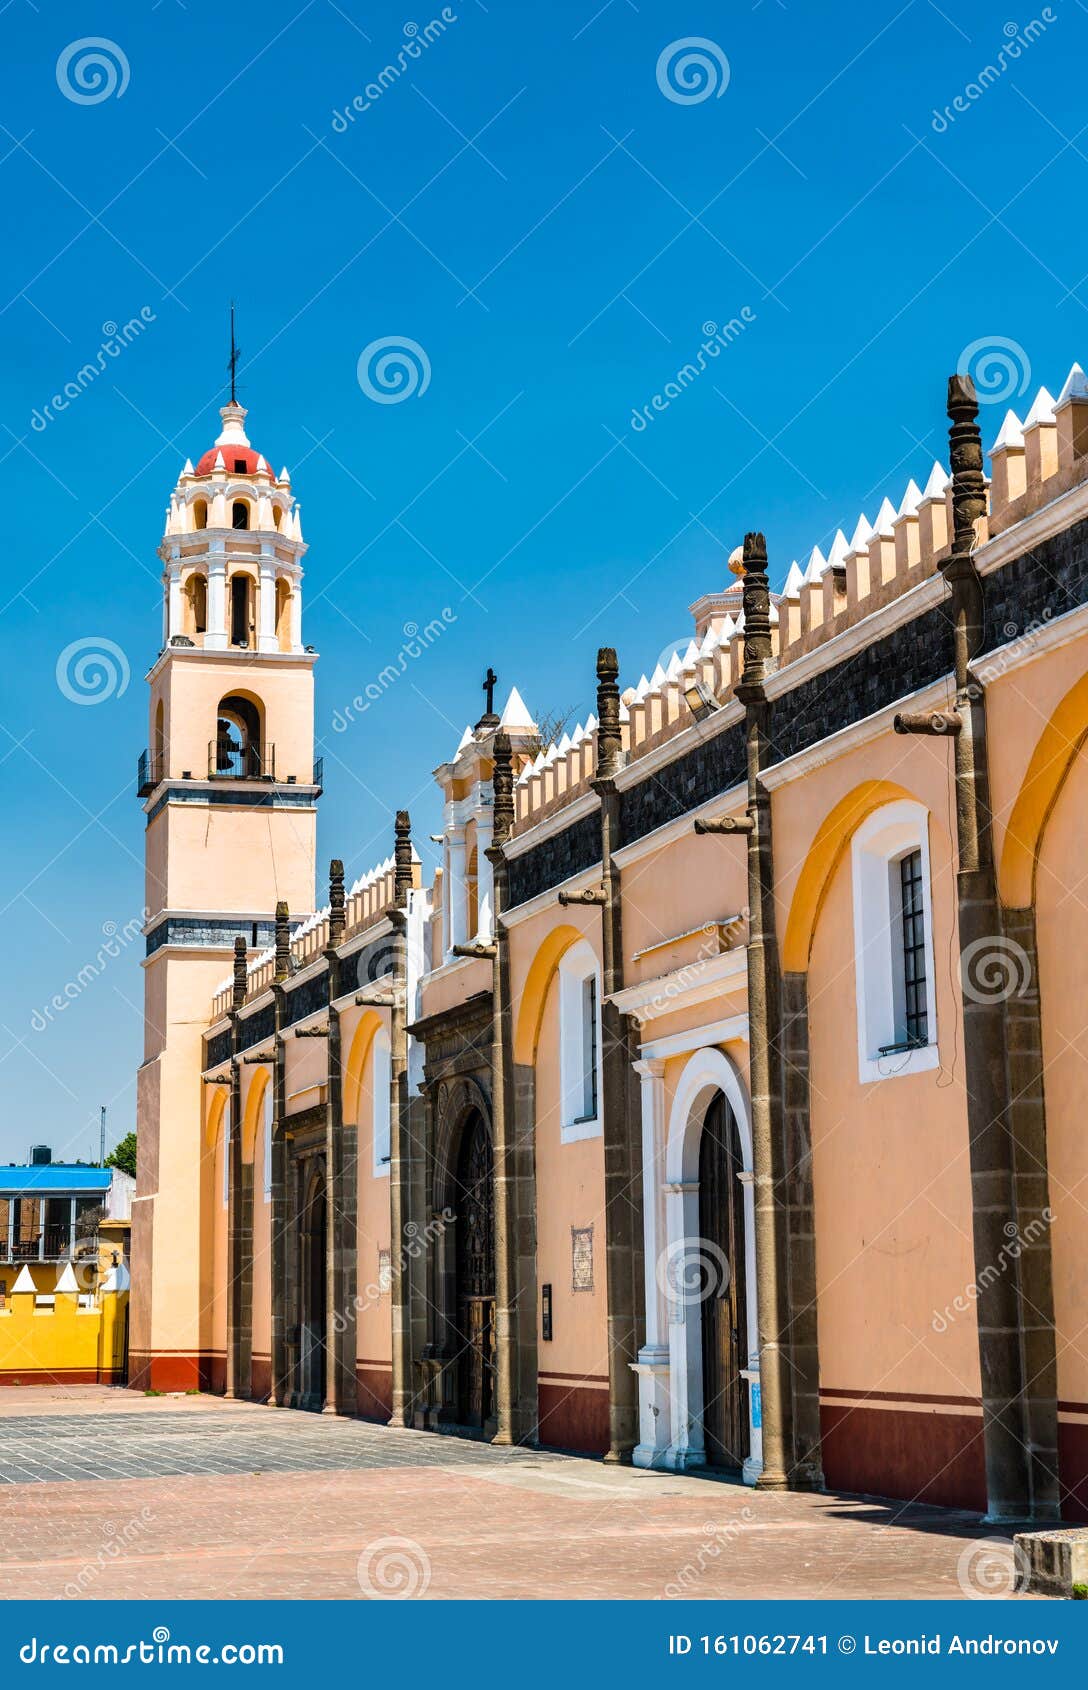 capilla real de naturales at san gabriel friary in cholula, mexico